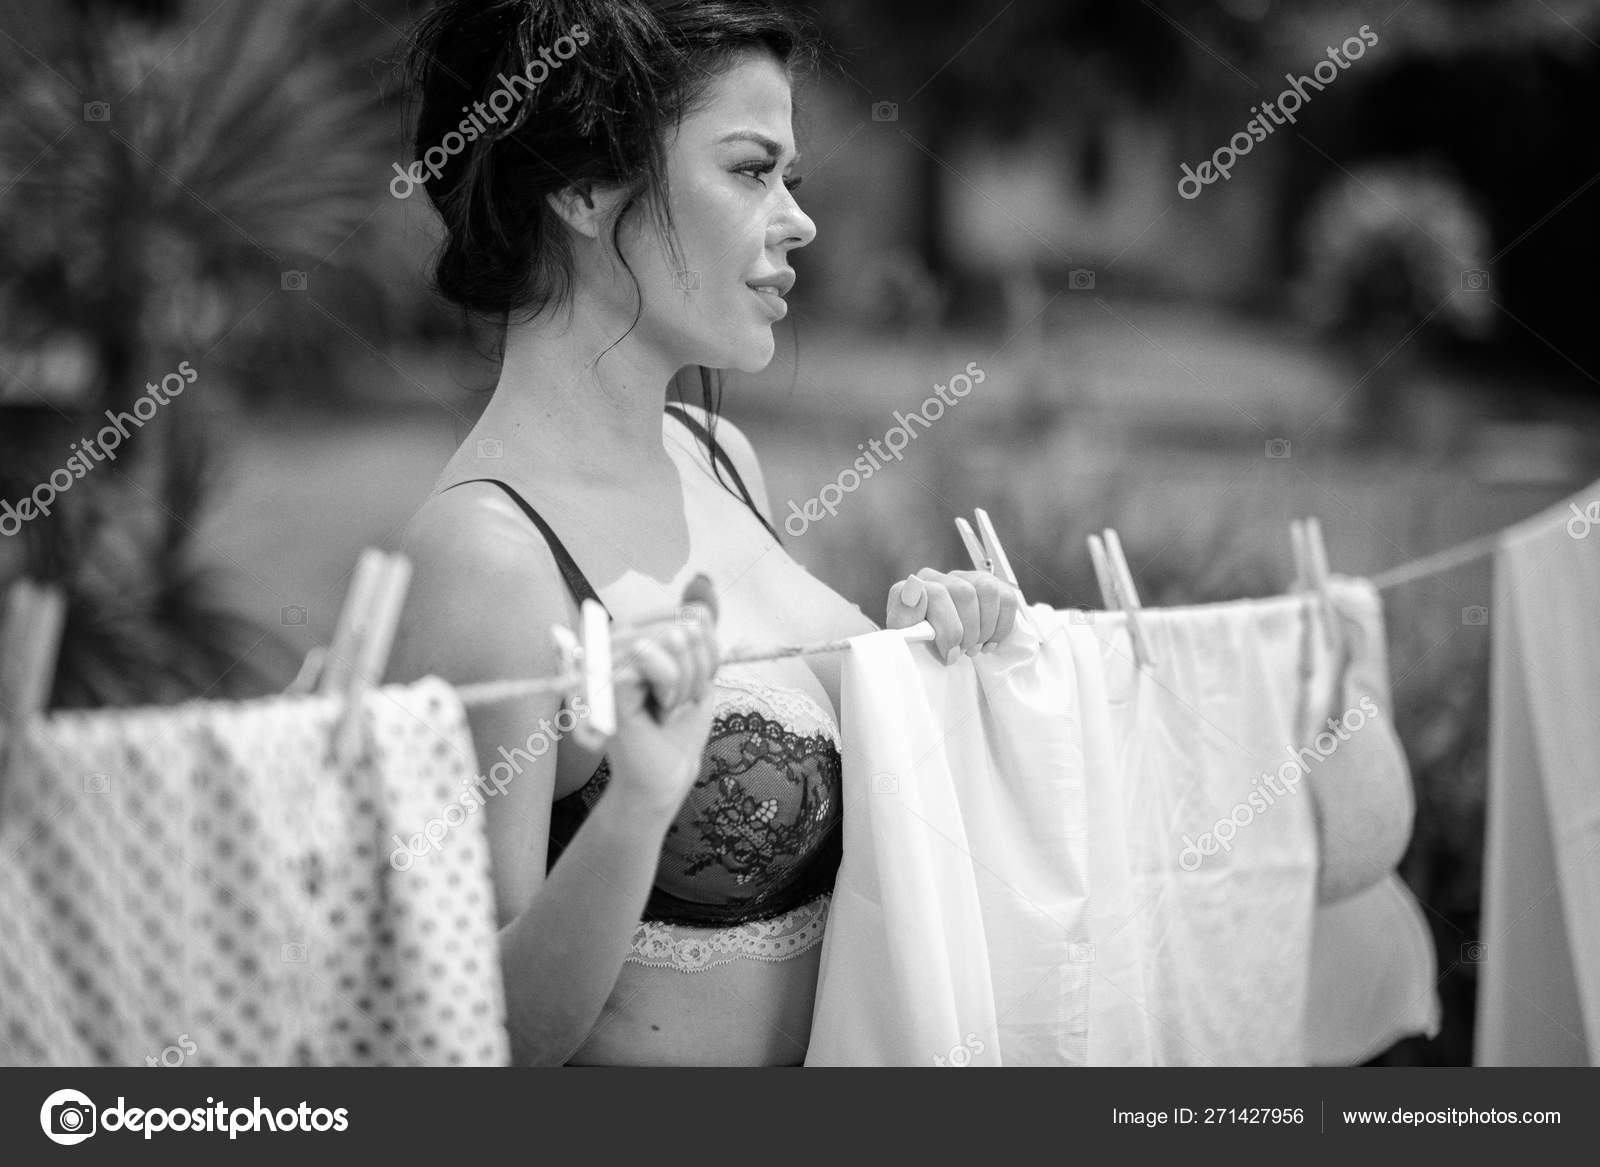 Красивая девушка в белье готова жано отдаваться соседу на стиральной машине